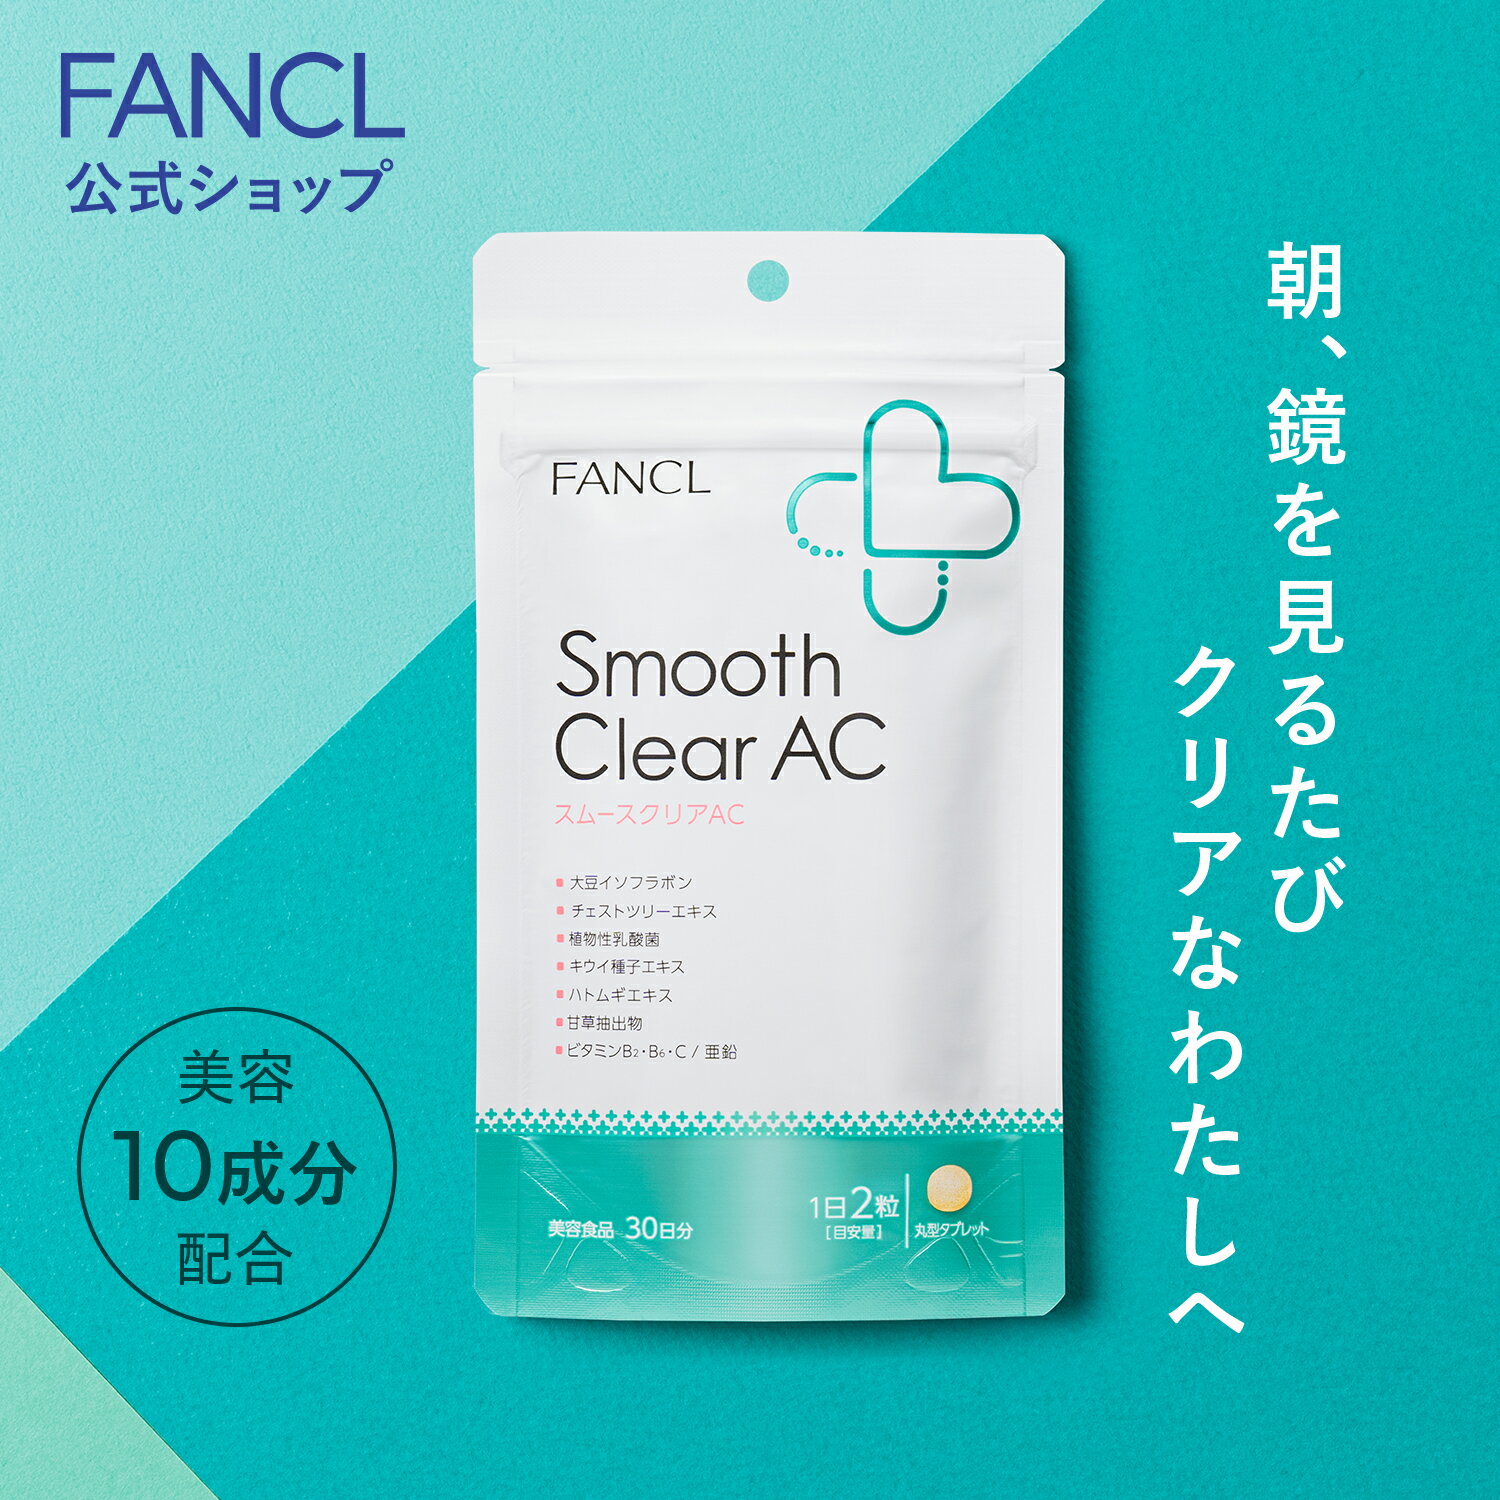 スムースクリア AC 30日分 【ファンケル 公式】[FANCL smoothclearac サプリ ビタミン ビタミンb ビタミンc 乳酸菌 …